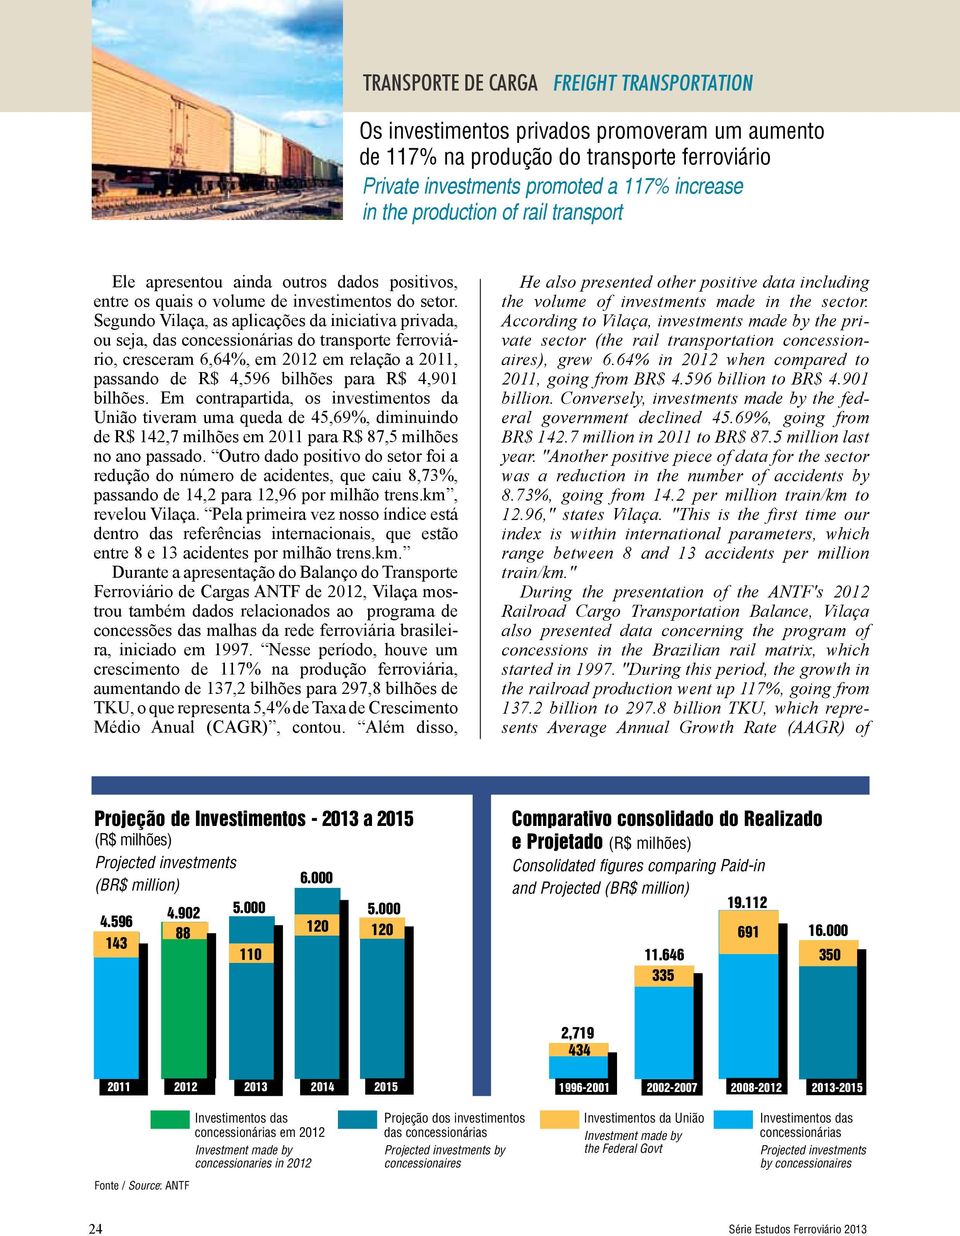 Segundo Vilaça, as aplicações da iniciativa privada, ou seja, das concessionárias do transporte ferroviário, cresceram 6,64%, em 2012 em relação a 2011, passando de R$ 4,596 bilhões para R$ 4,901